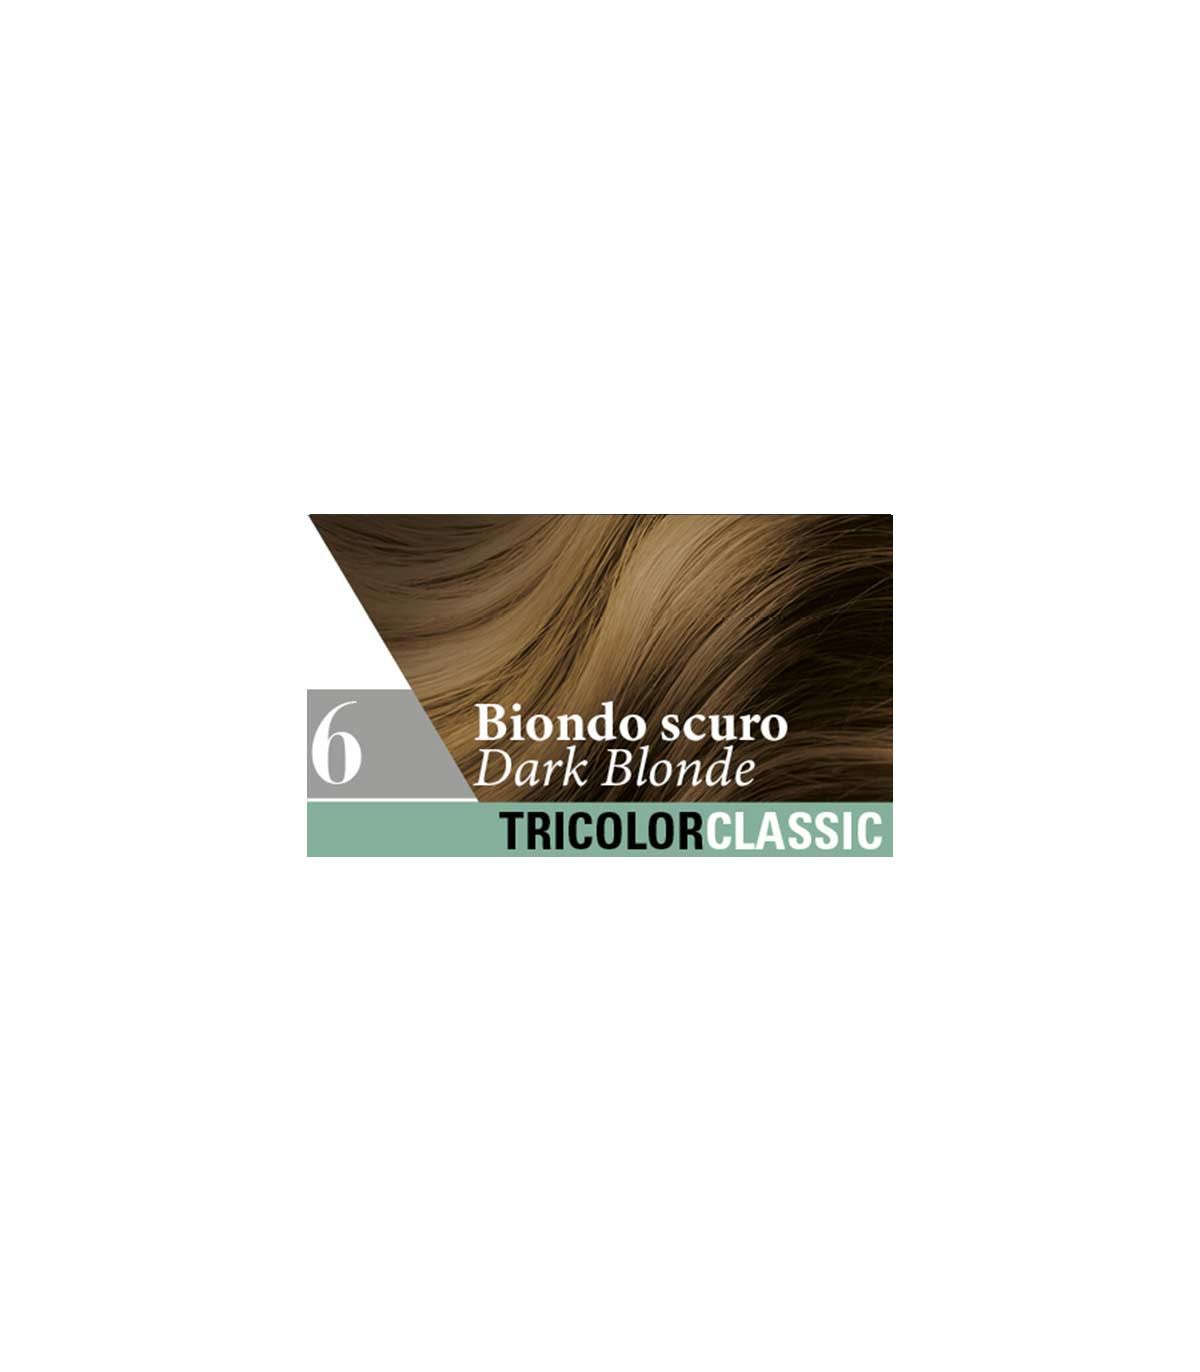 Tricolor Classic Tinta Capelli 6 Biondo Scuro